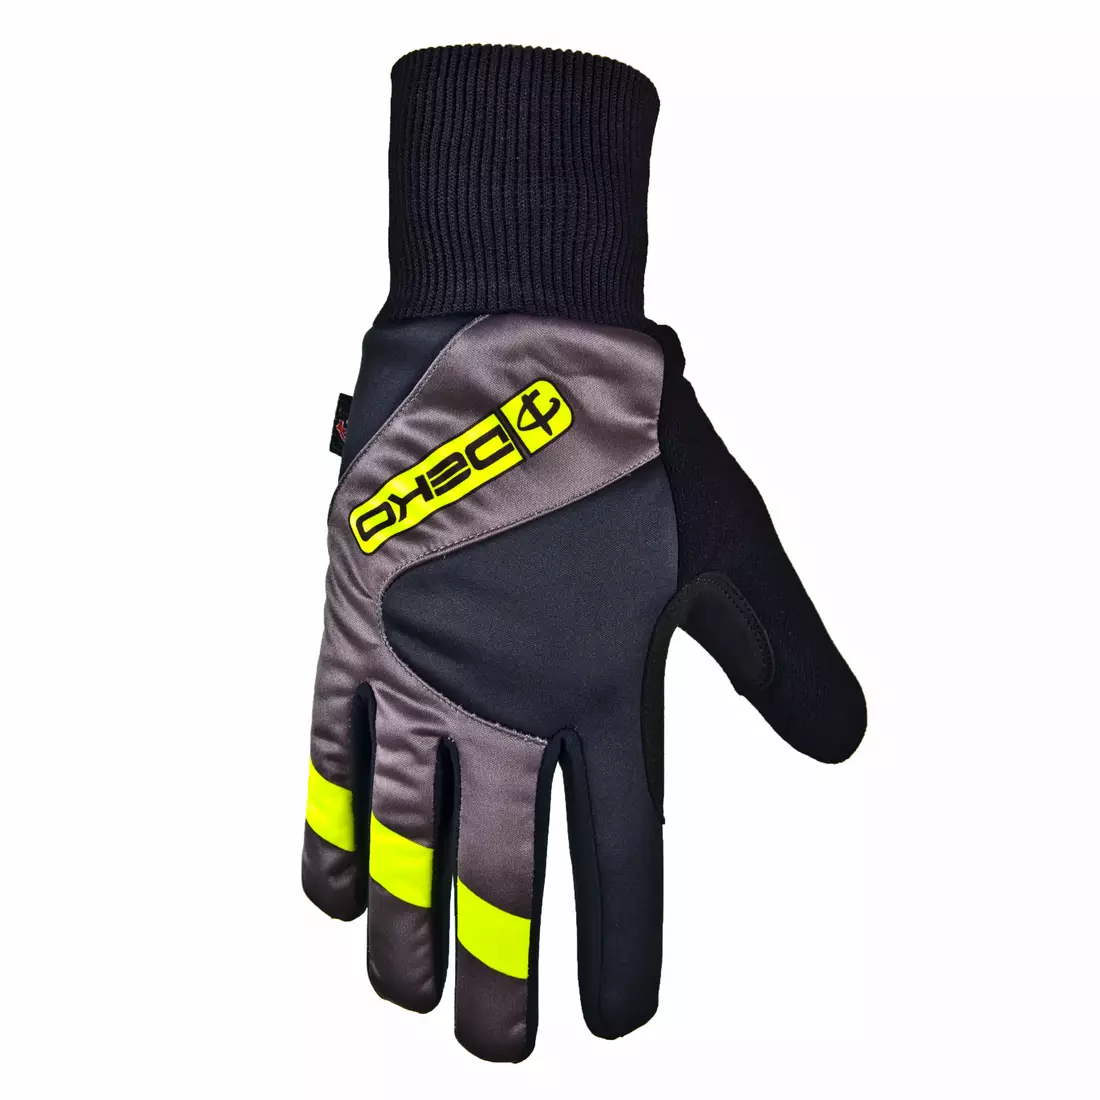 DEKO RAST zimní cyklistické rukavice černo-fluor žluté DKW-910